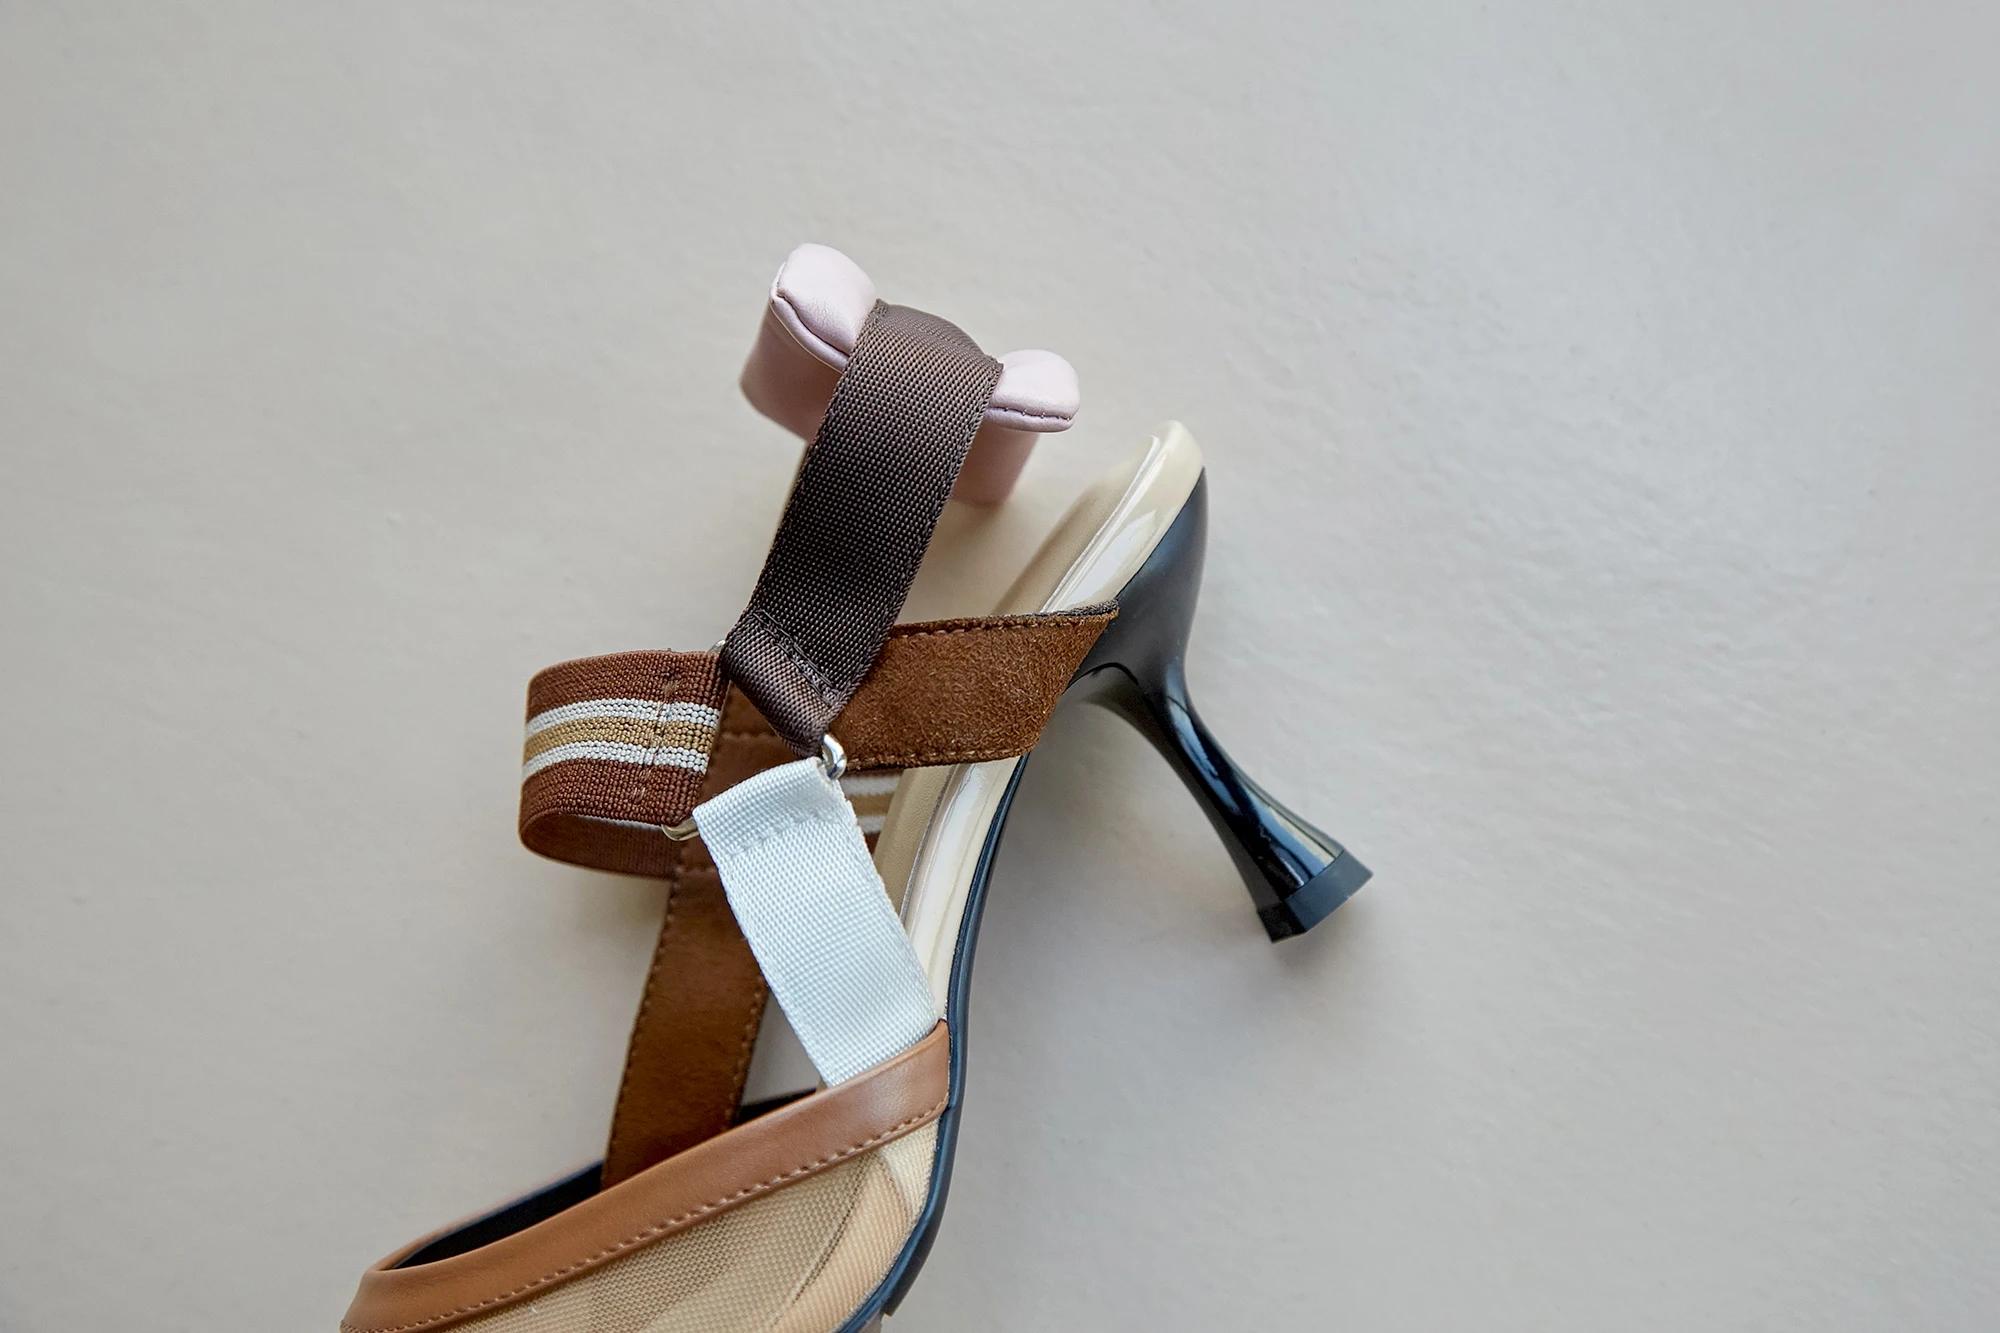 Kmeioo Nueva Moda de la Punta del Dedo del pie zapatos de Tacón Alto Sandalias de Mujer de las Señoras elegantes cómodo Parte de las Bombas de Vestir de cuero Genuino Zapatos de 6cm 3